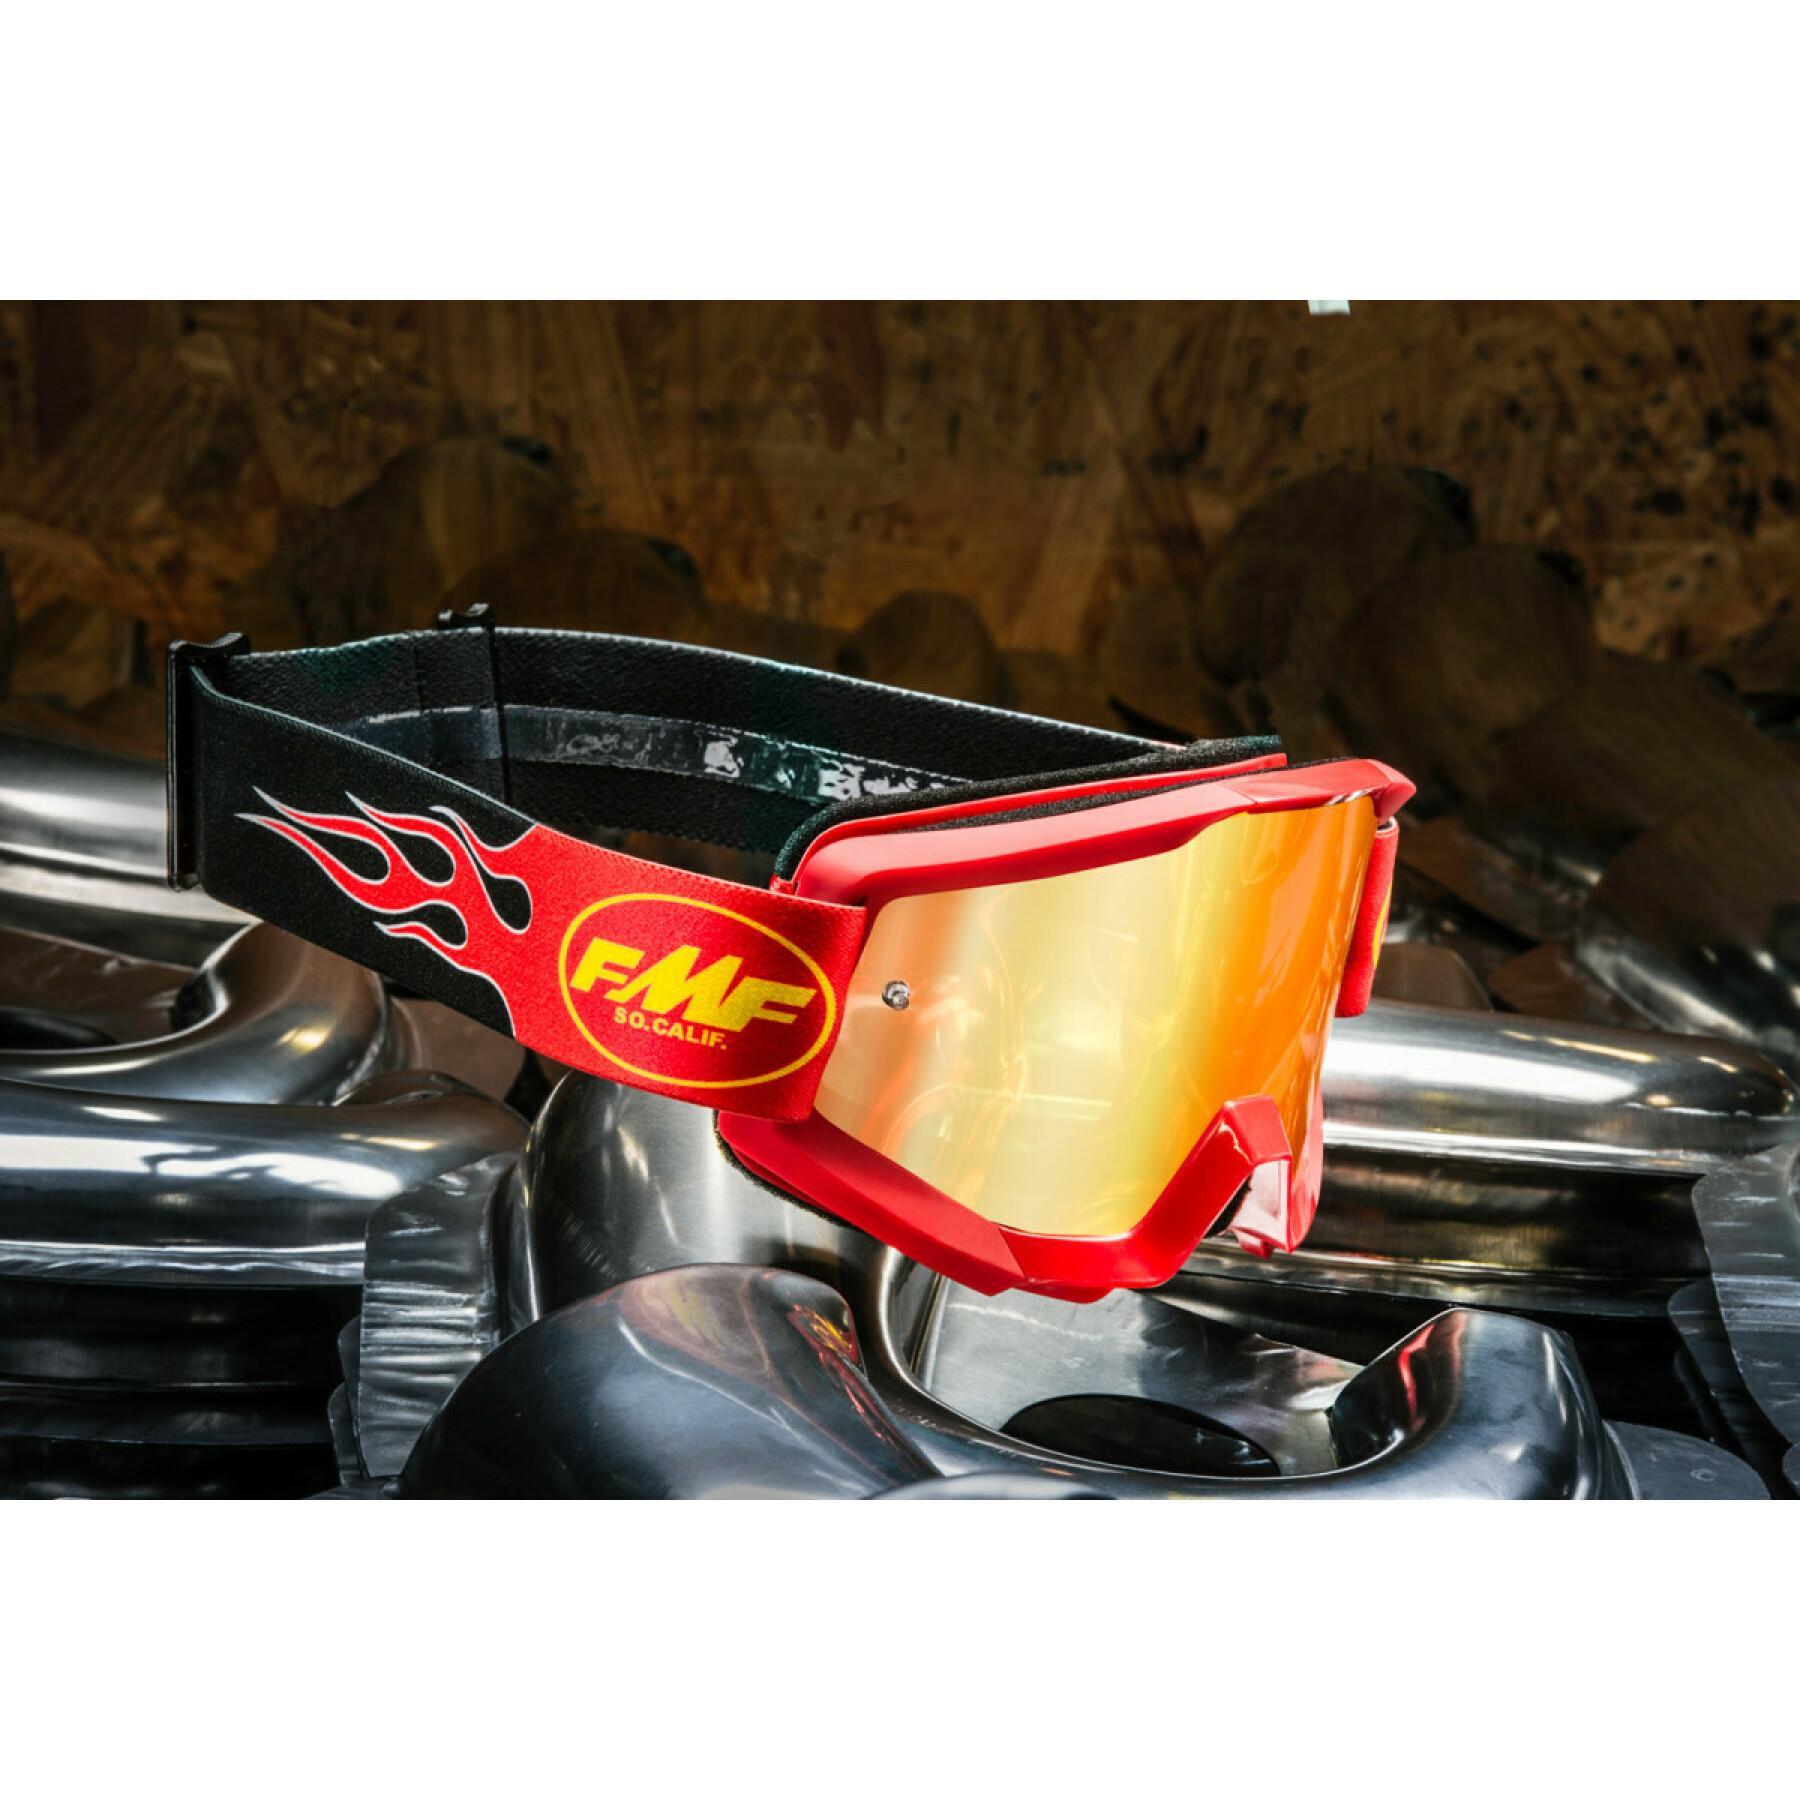 Motorrad-Crossbrille FMF Vision flame